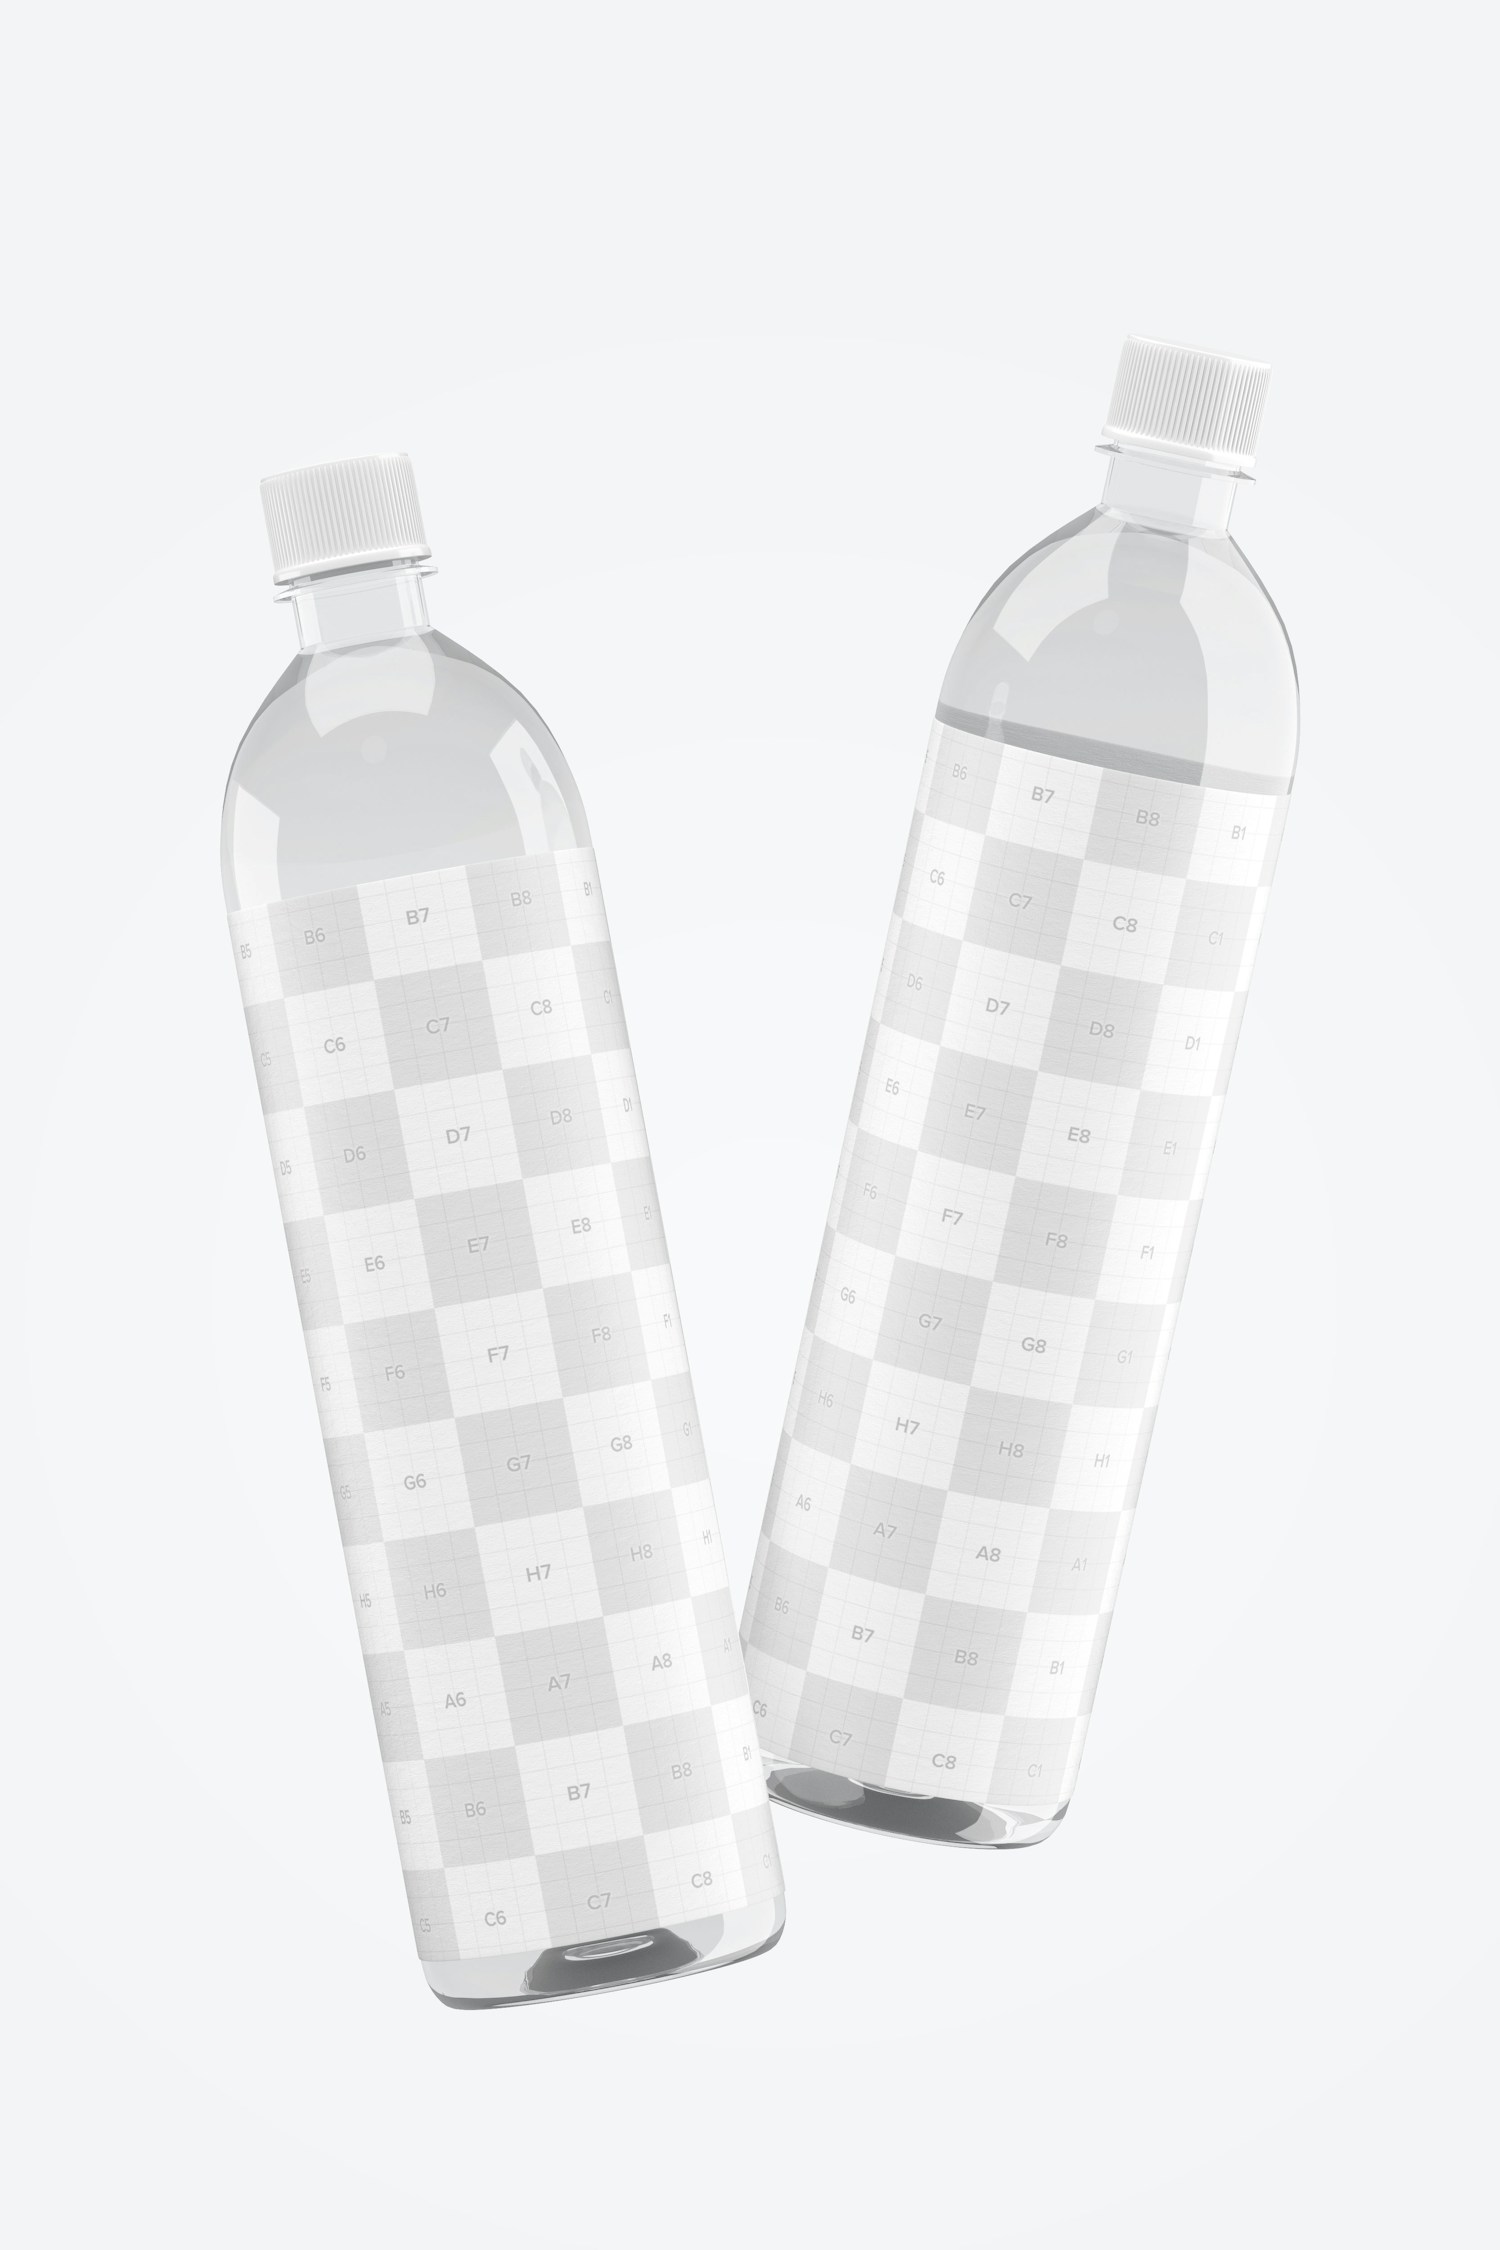 1L Sleek Clear Water Bottles Mockup, Falling